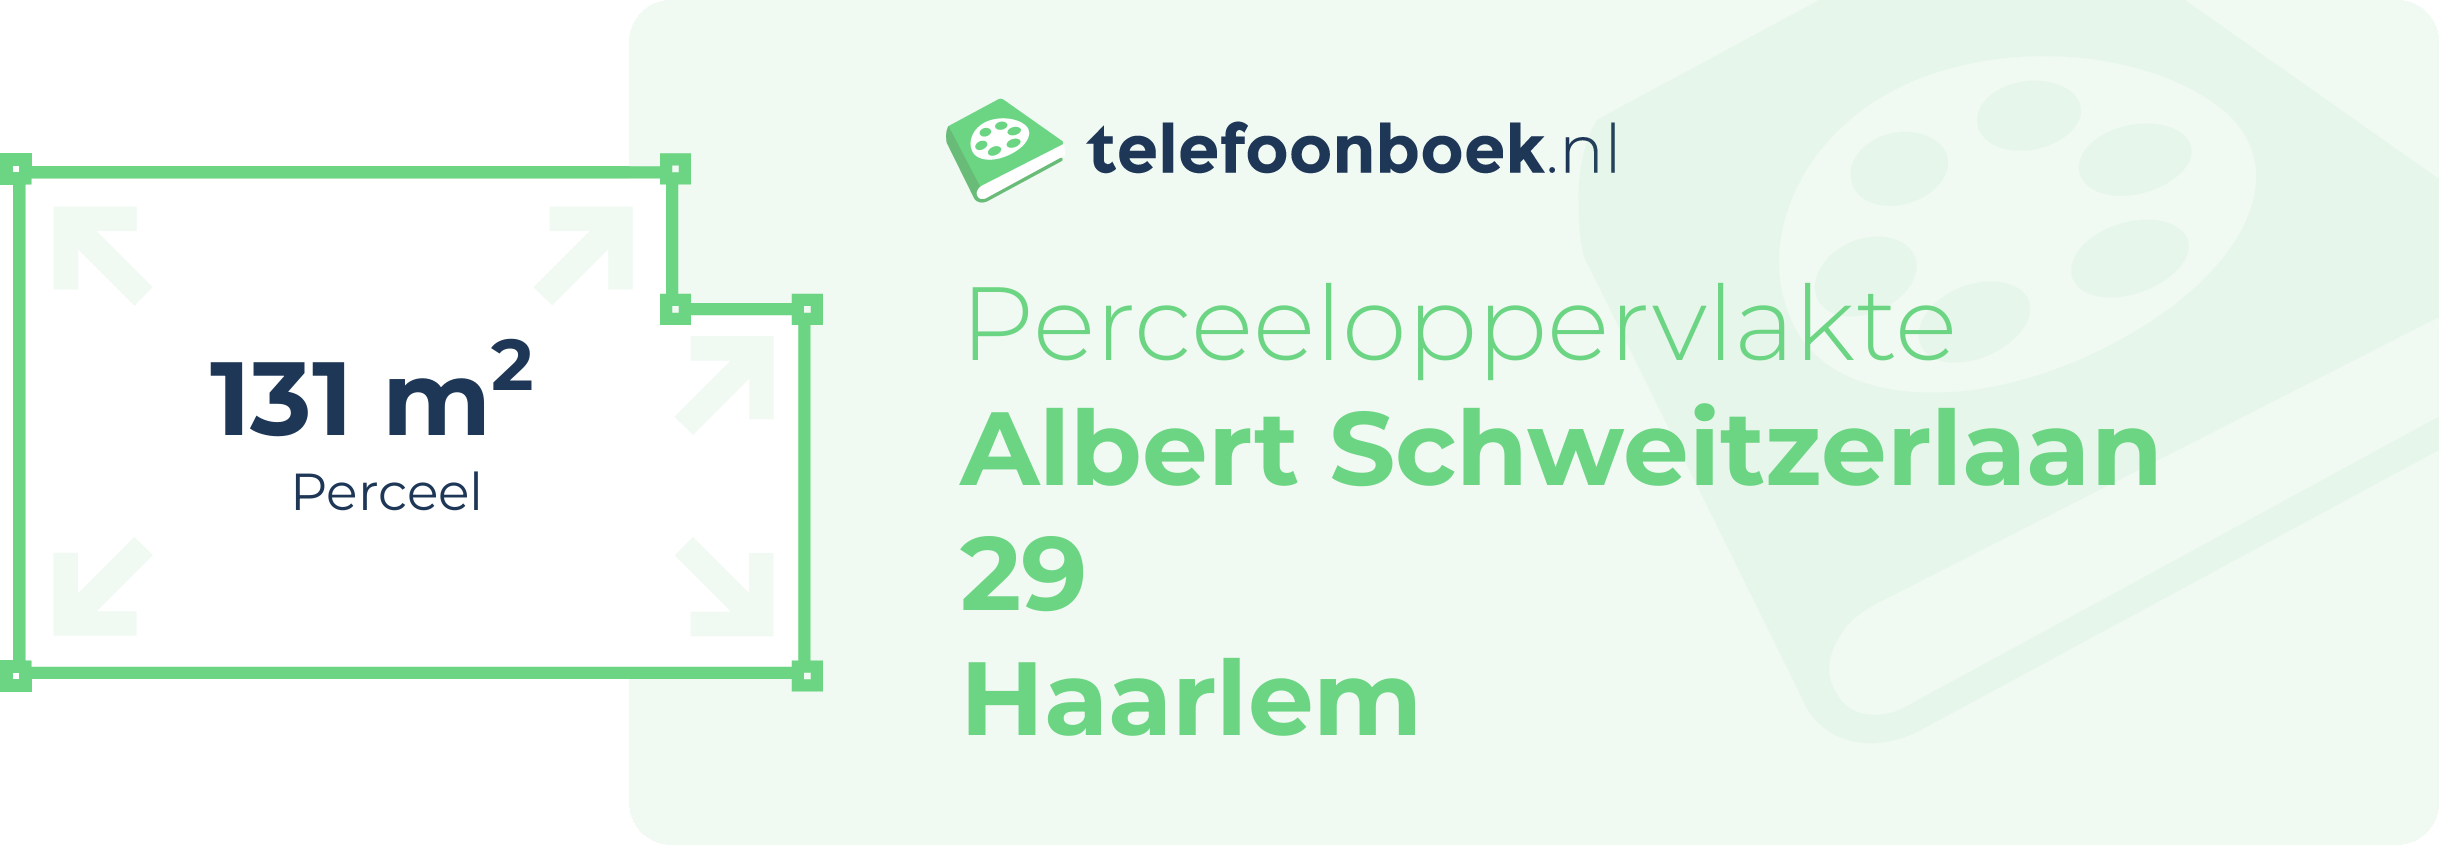 Perceeloppervlakte Albert Schweitzerlaan 29 Haarlem